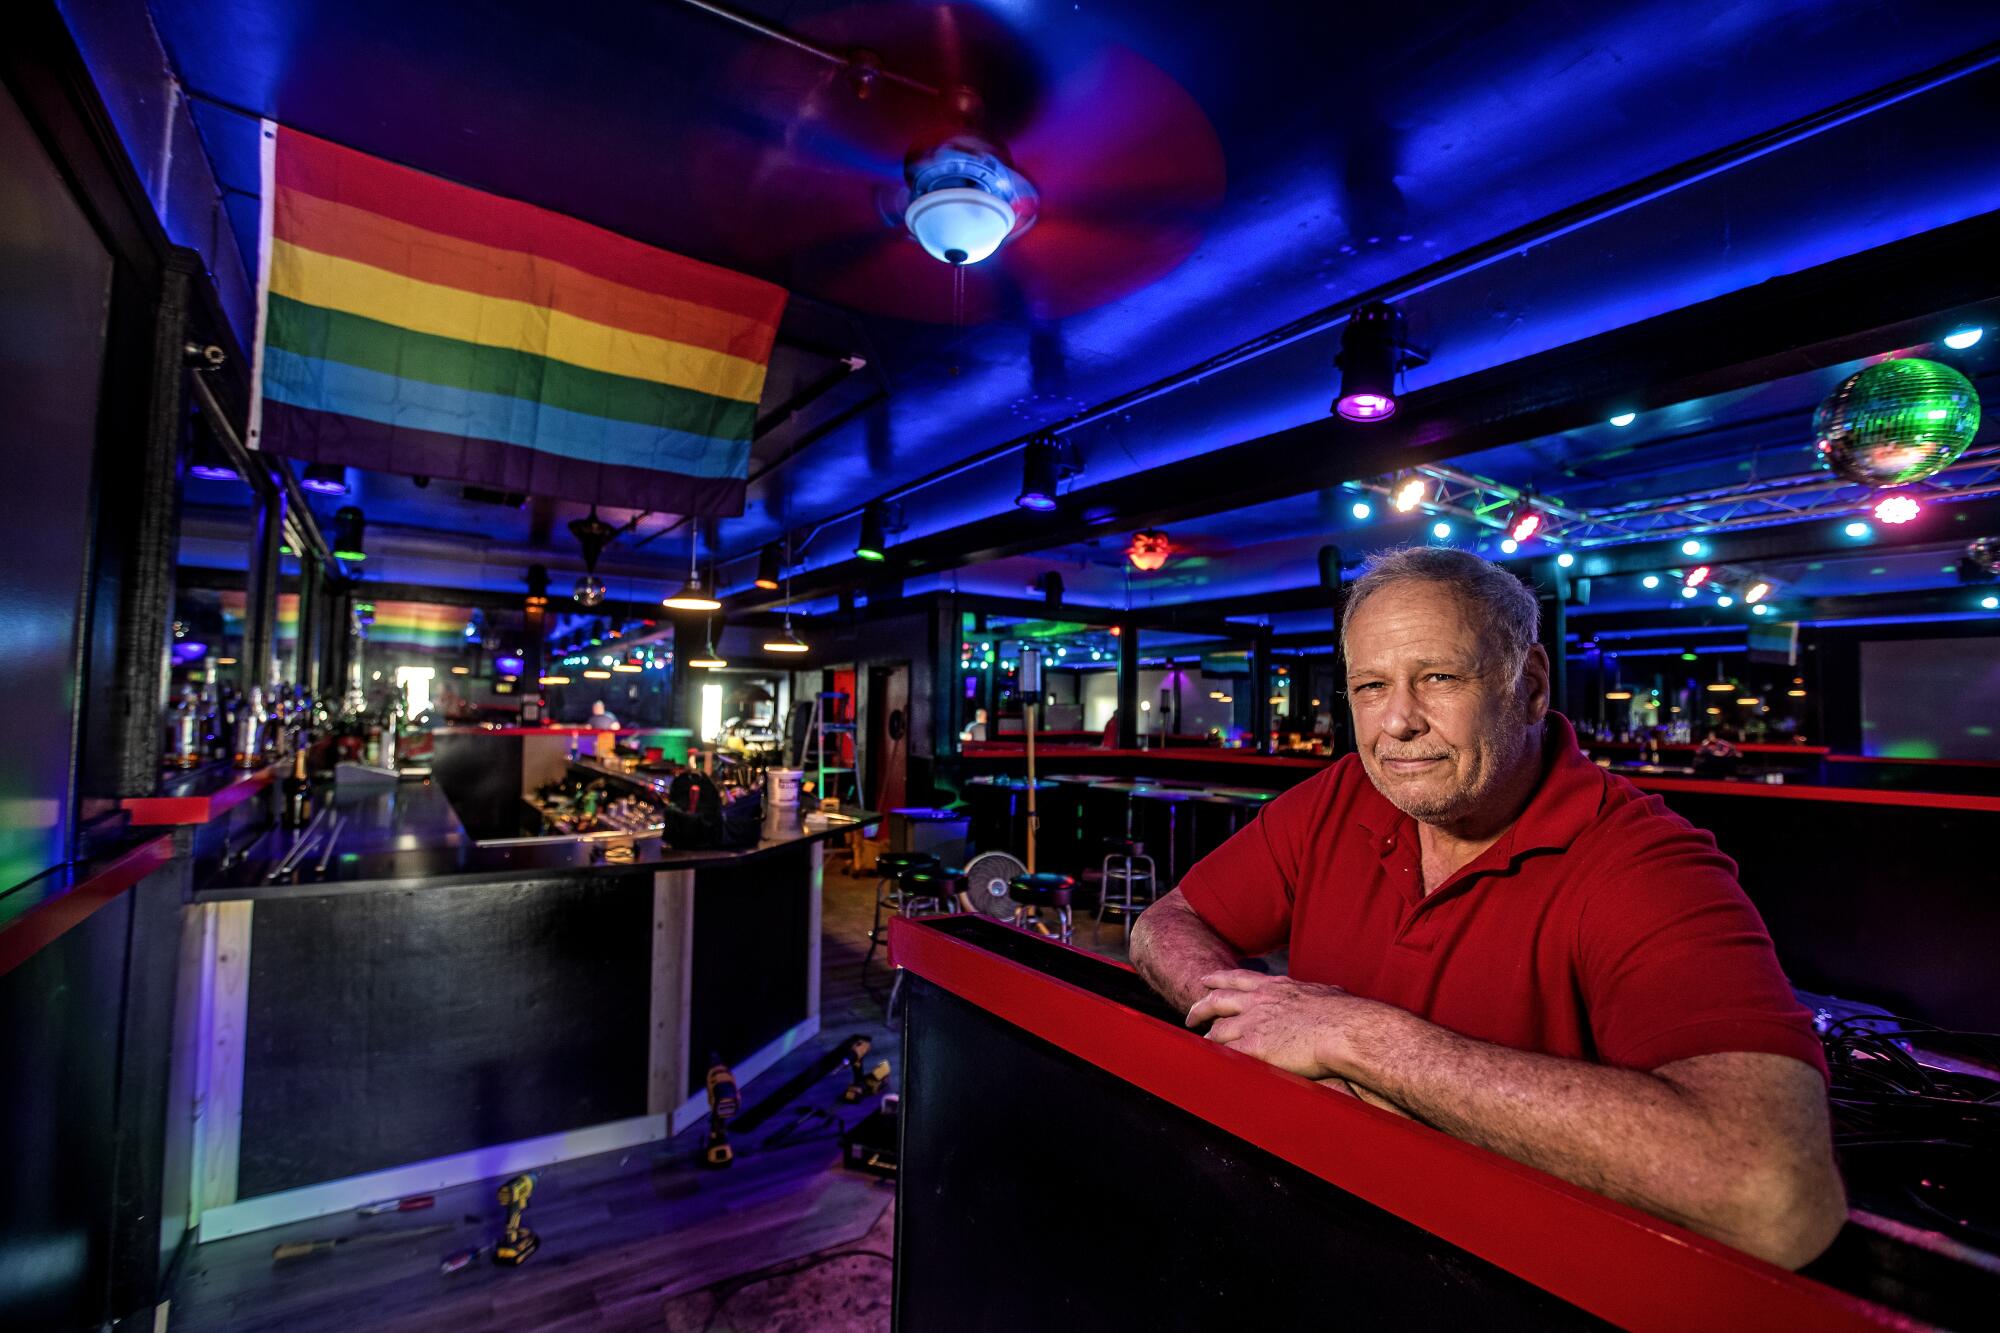 Owner Steve Terradot sits at the bar at his gay club, the Boulevard.